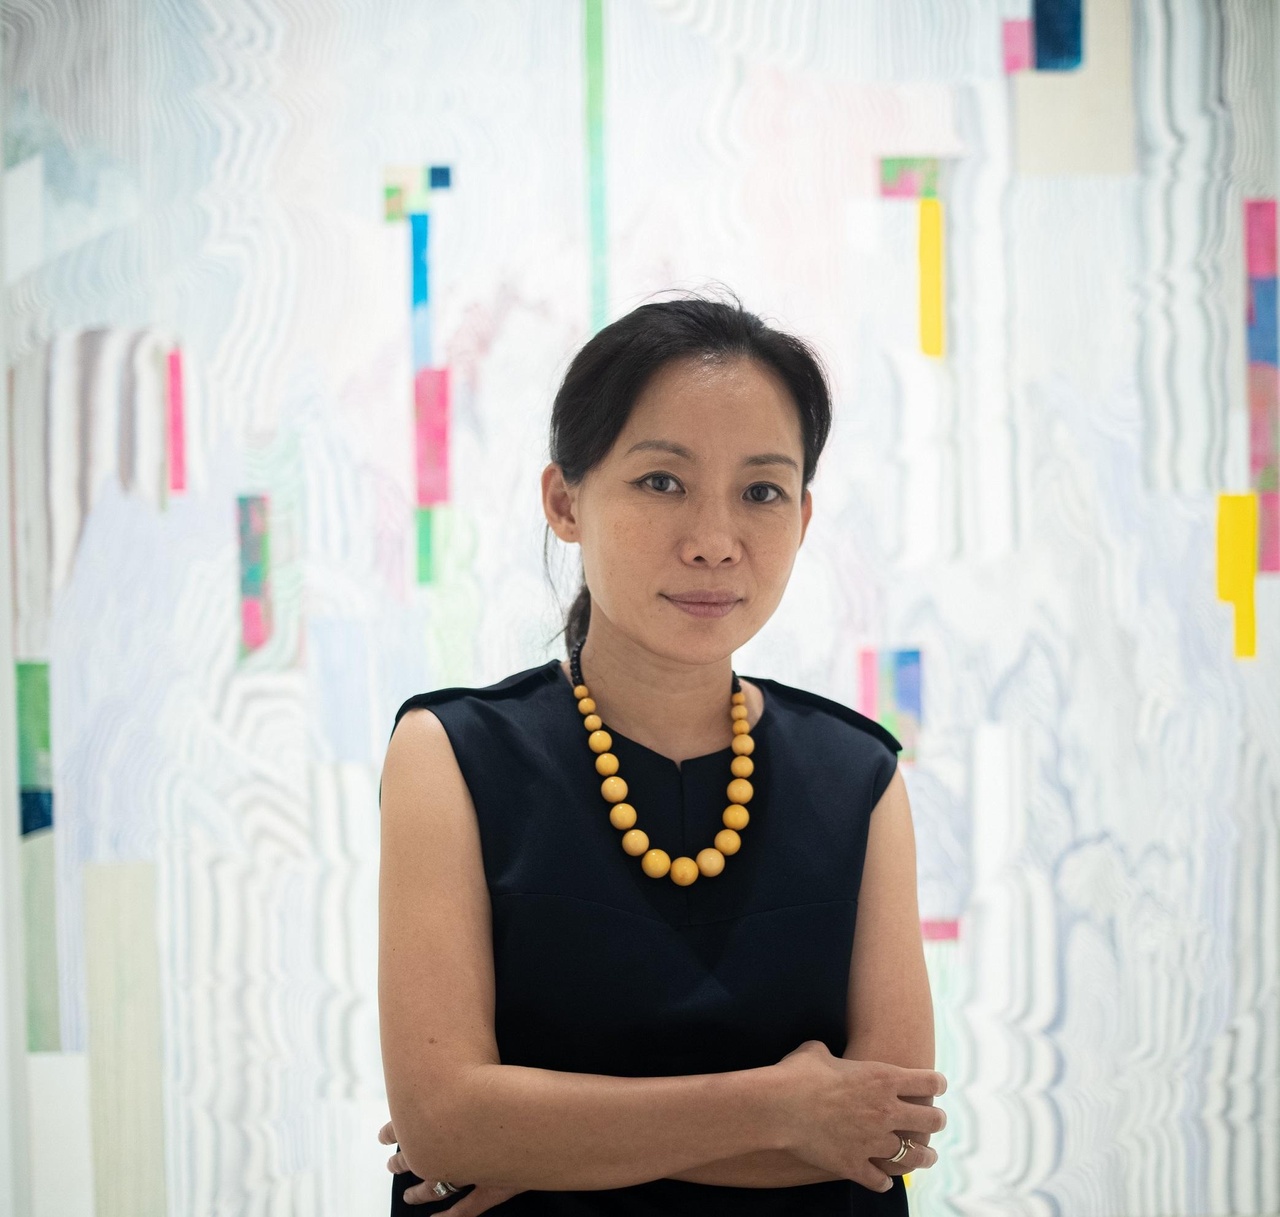 《清風明月: An Ode to Life》策展人，Soluna Fine Art始創人兼畫廊總監 李恩周 (Rachel Eun Ju Lee )表示，在韓國文化中，四季分明既是自然風景，也標誌著人類與天地萬物並存。其背後是韓國藝術家金永憲的「電子鄉愁」系列作品之《金剛山》。